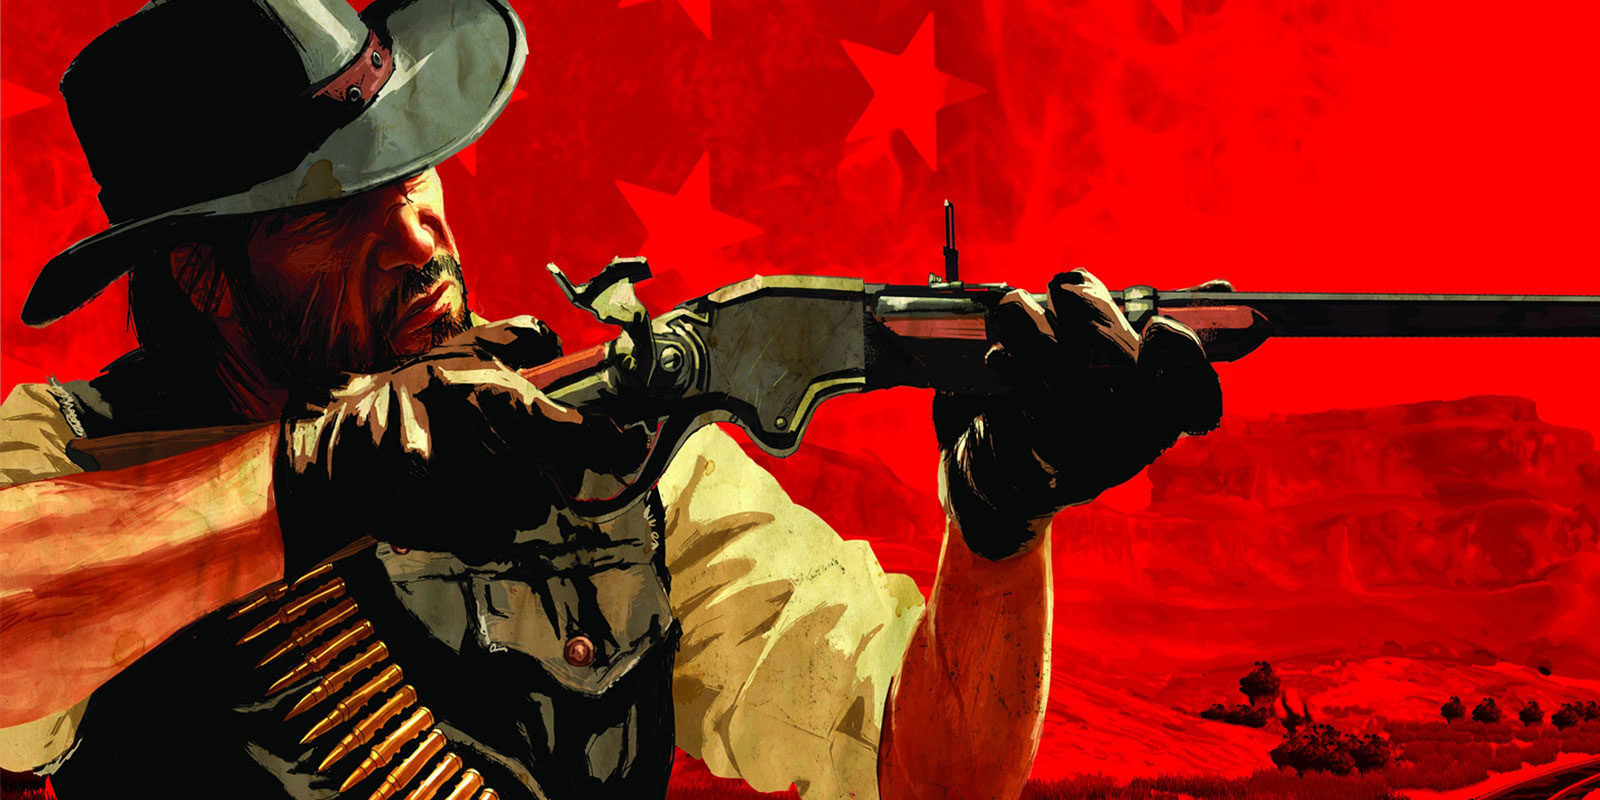 Rockstar juega con 'Red Dead Redemption 2' en las redes sociales